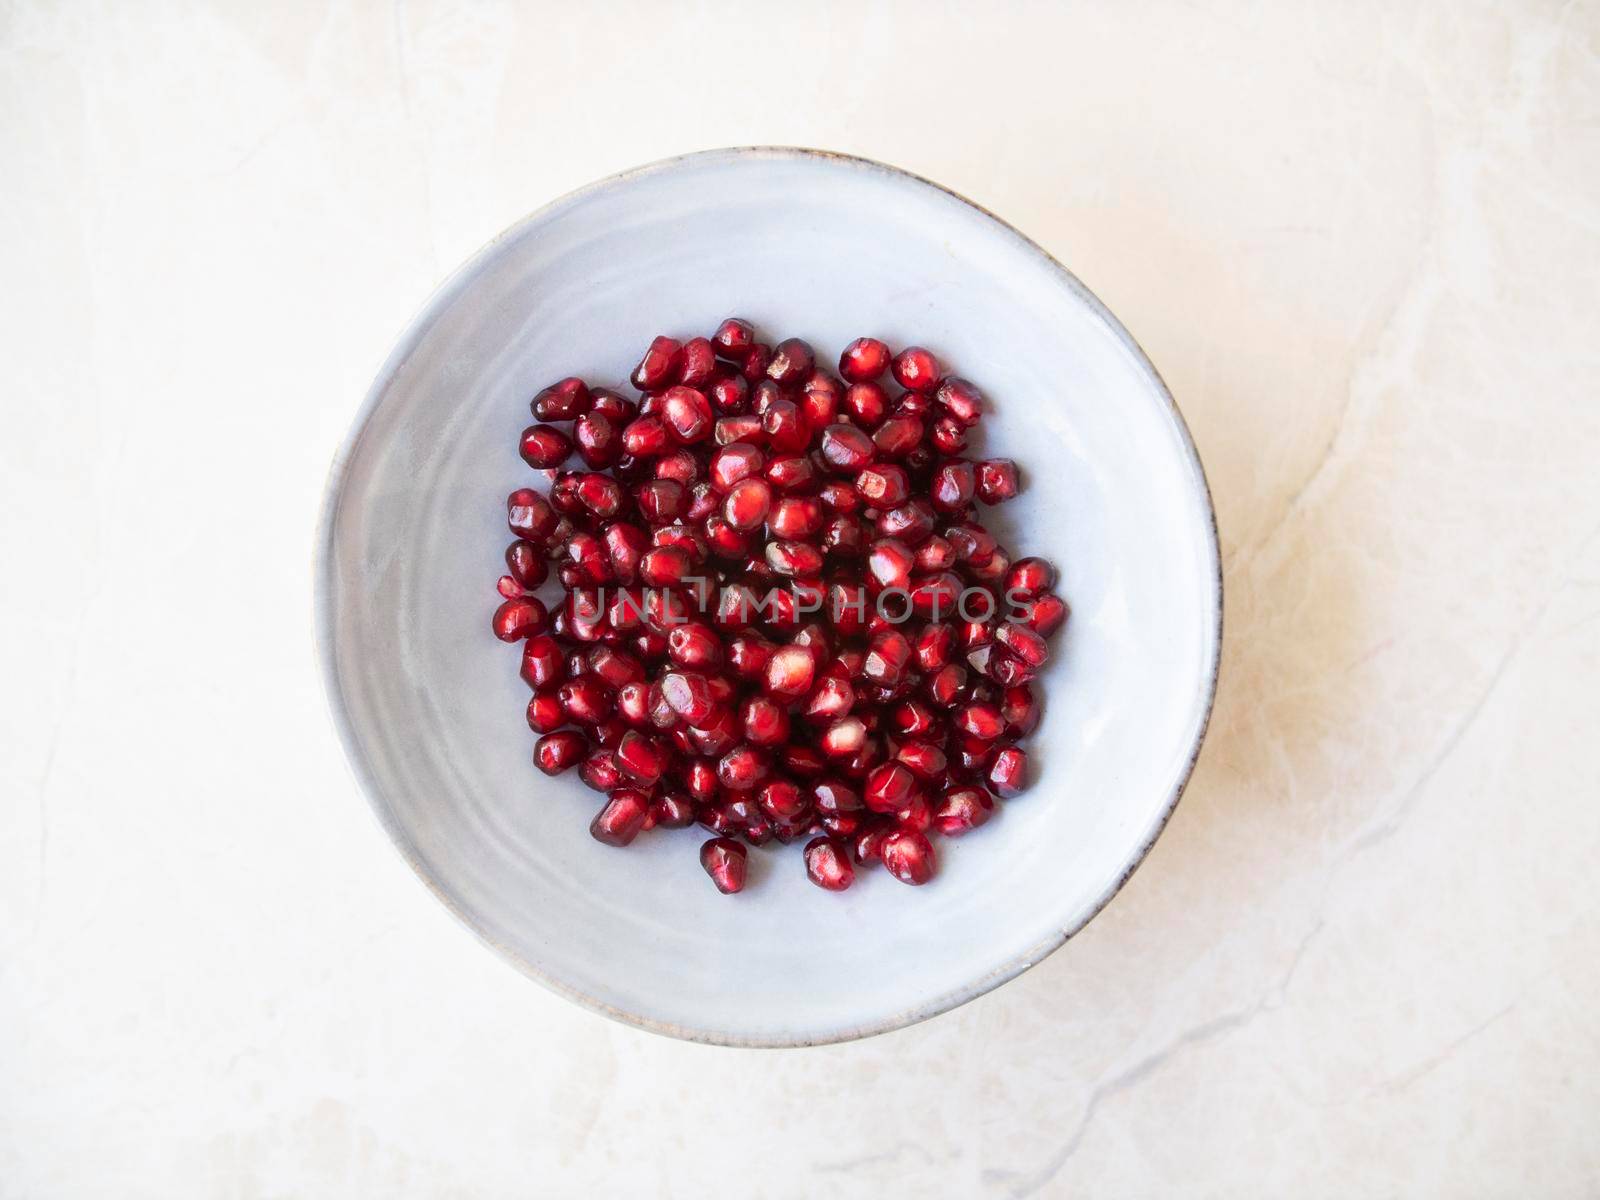 Pomegranate Seeds in Bowl by charlotteLake